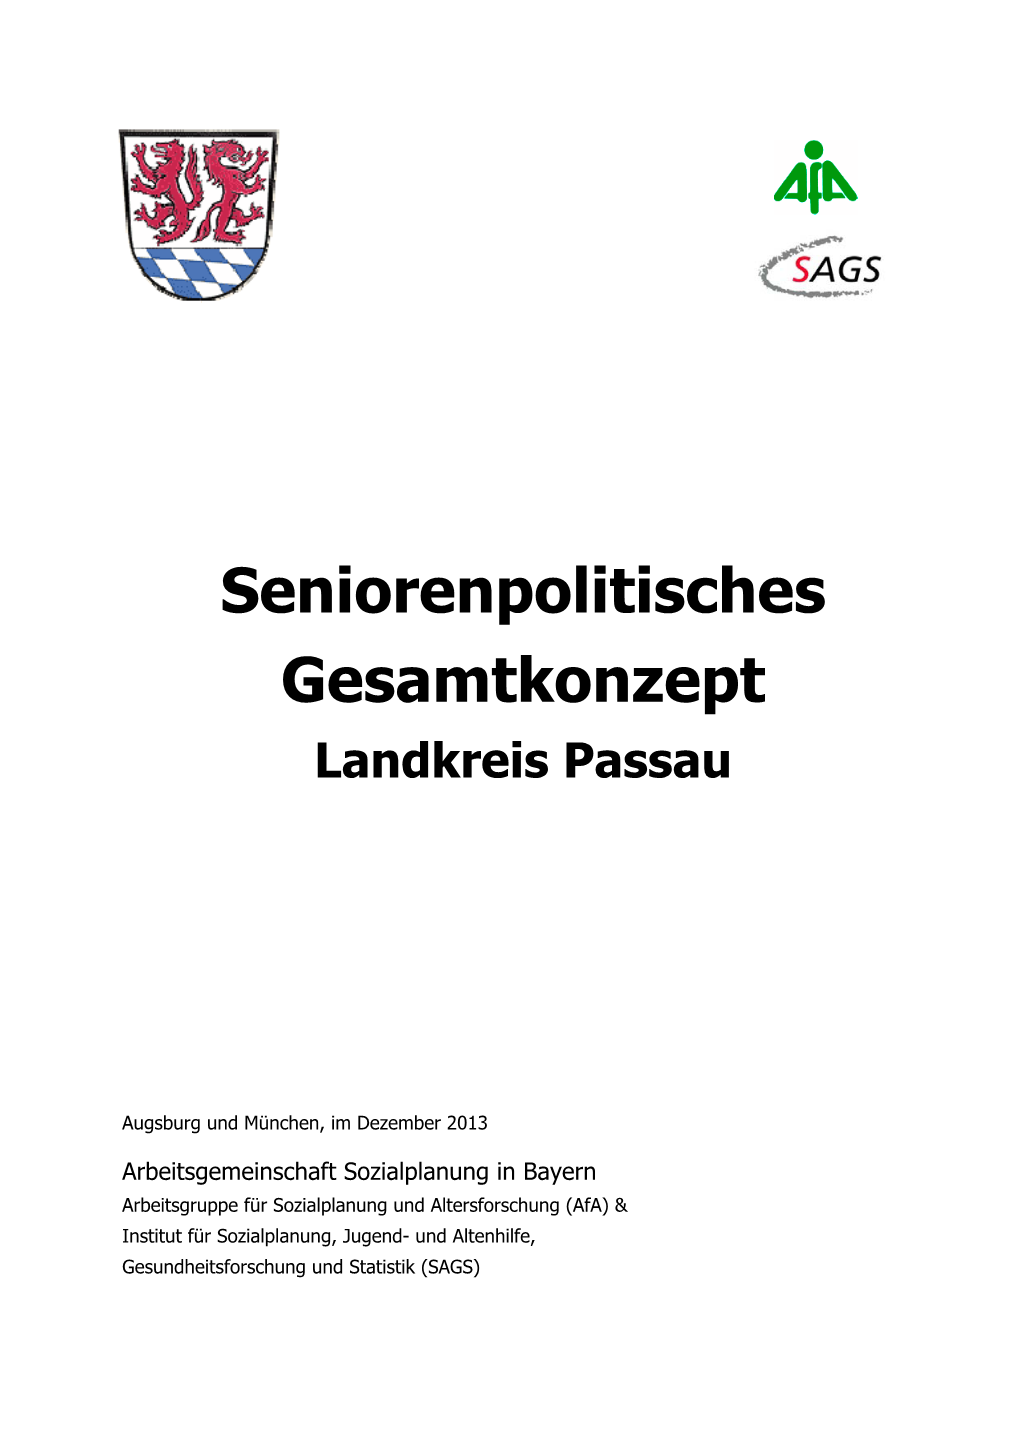 Seniorenpolitisches Gesamtkonzept Landkreis Passau